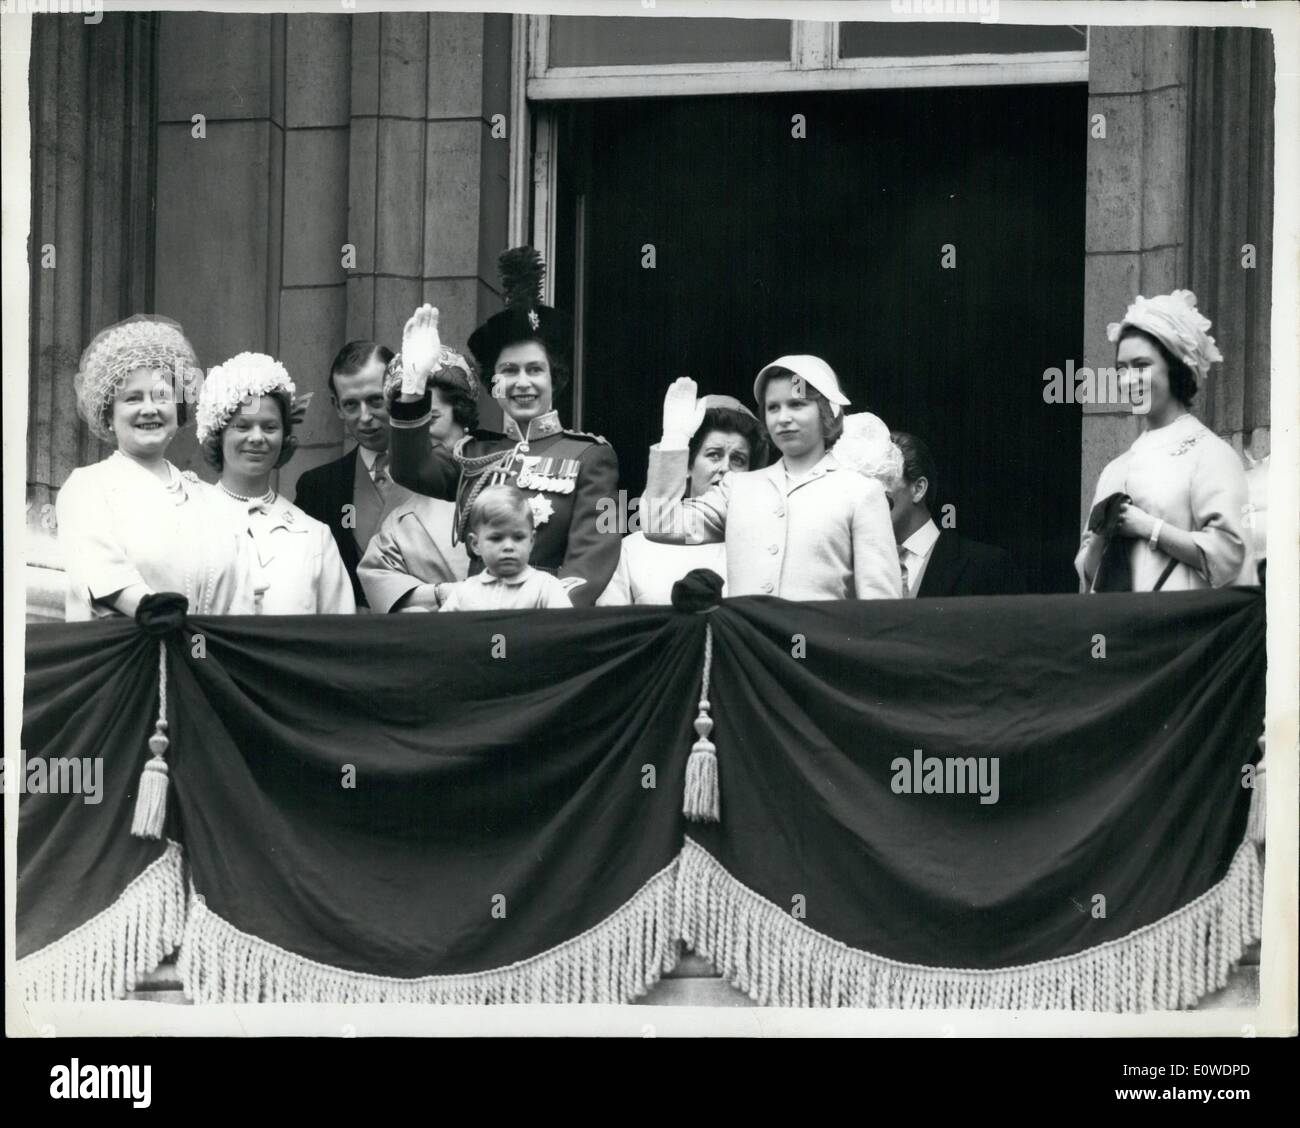 Jun 06, 1962 - El príncipe Andrés en el balcón de la familia real, incluyendo pequeños príncipes Andrés, en el balcón del Palacio de Buckingham durante la mosca-pasado de cazas de la RAF que siguió a la ceremonia el color trooping guardias de a caballo desfile de hoy, el cumpleaños oficial de la reina y el 9º aniversario de su coronación. De izquierda a derecha. La reina madre, la duquesa de Kent, el duque de Kent, la princesa marina (oculto), la reina, los príncipes Andrés, la princesa Alexandra, la princesa Ana y el Princess Margaret Foto de stock